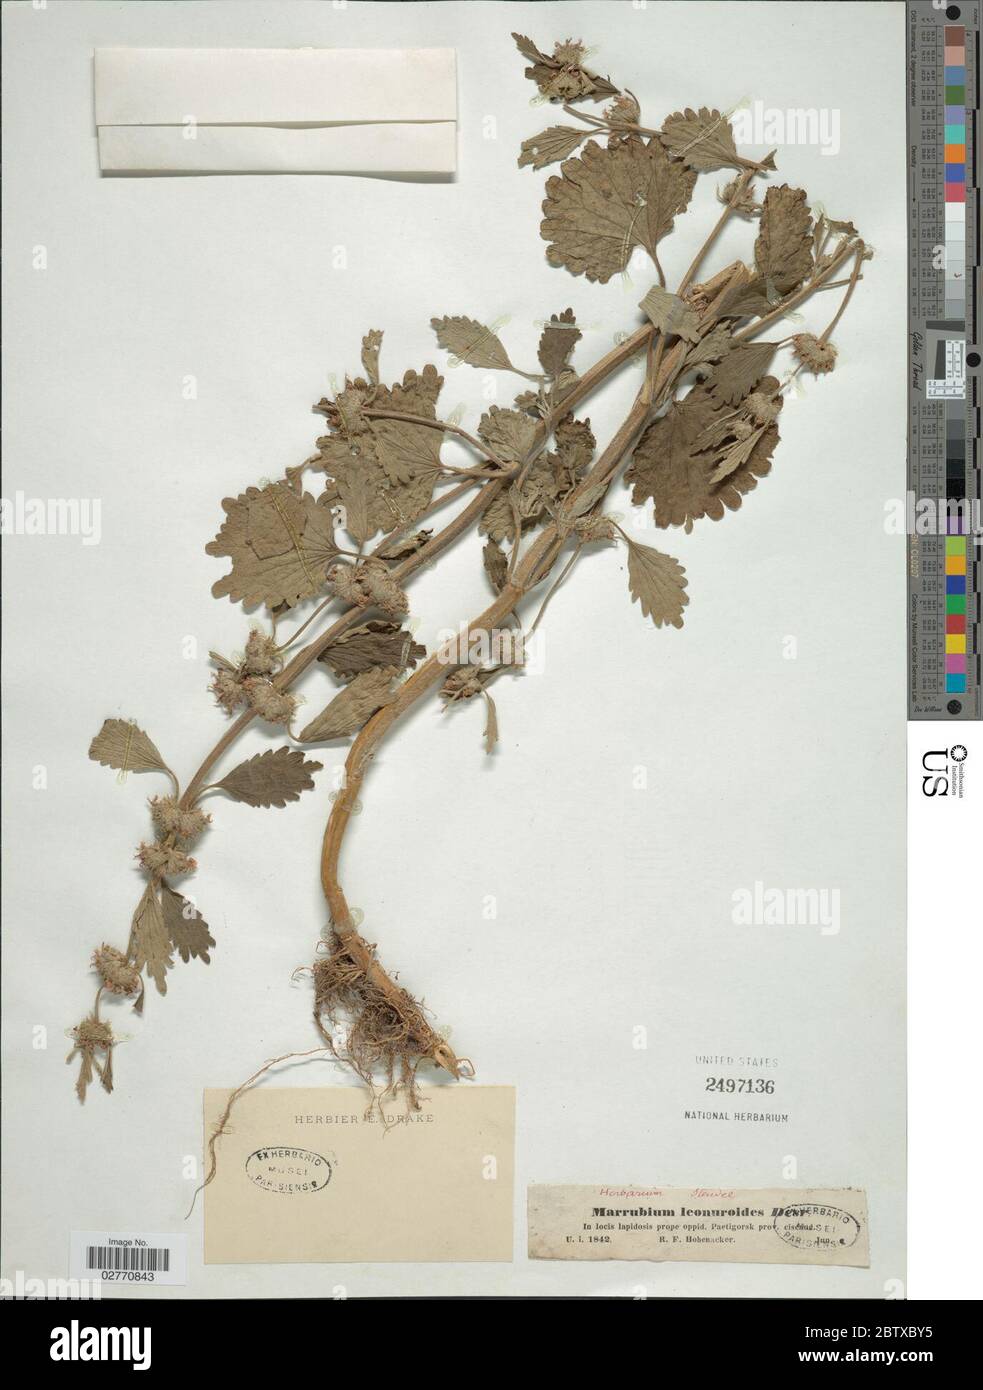 Marrubium leonuroides Desr. 14 Sep 20181 Stock Photo